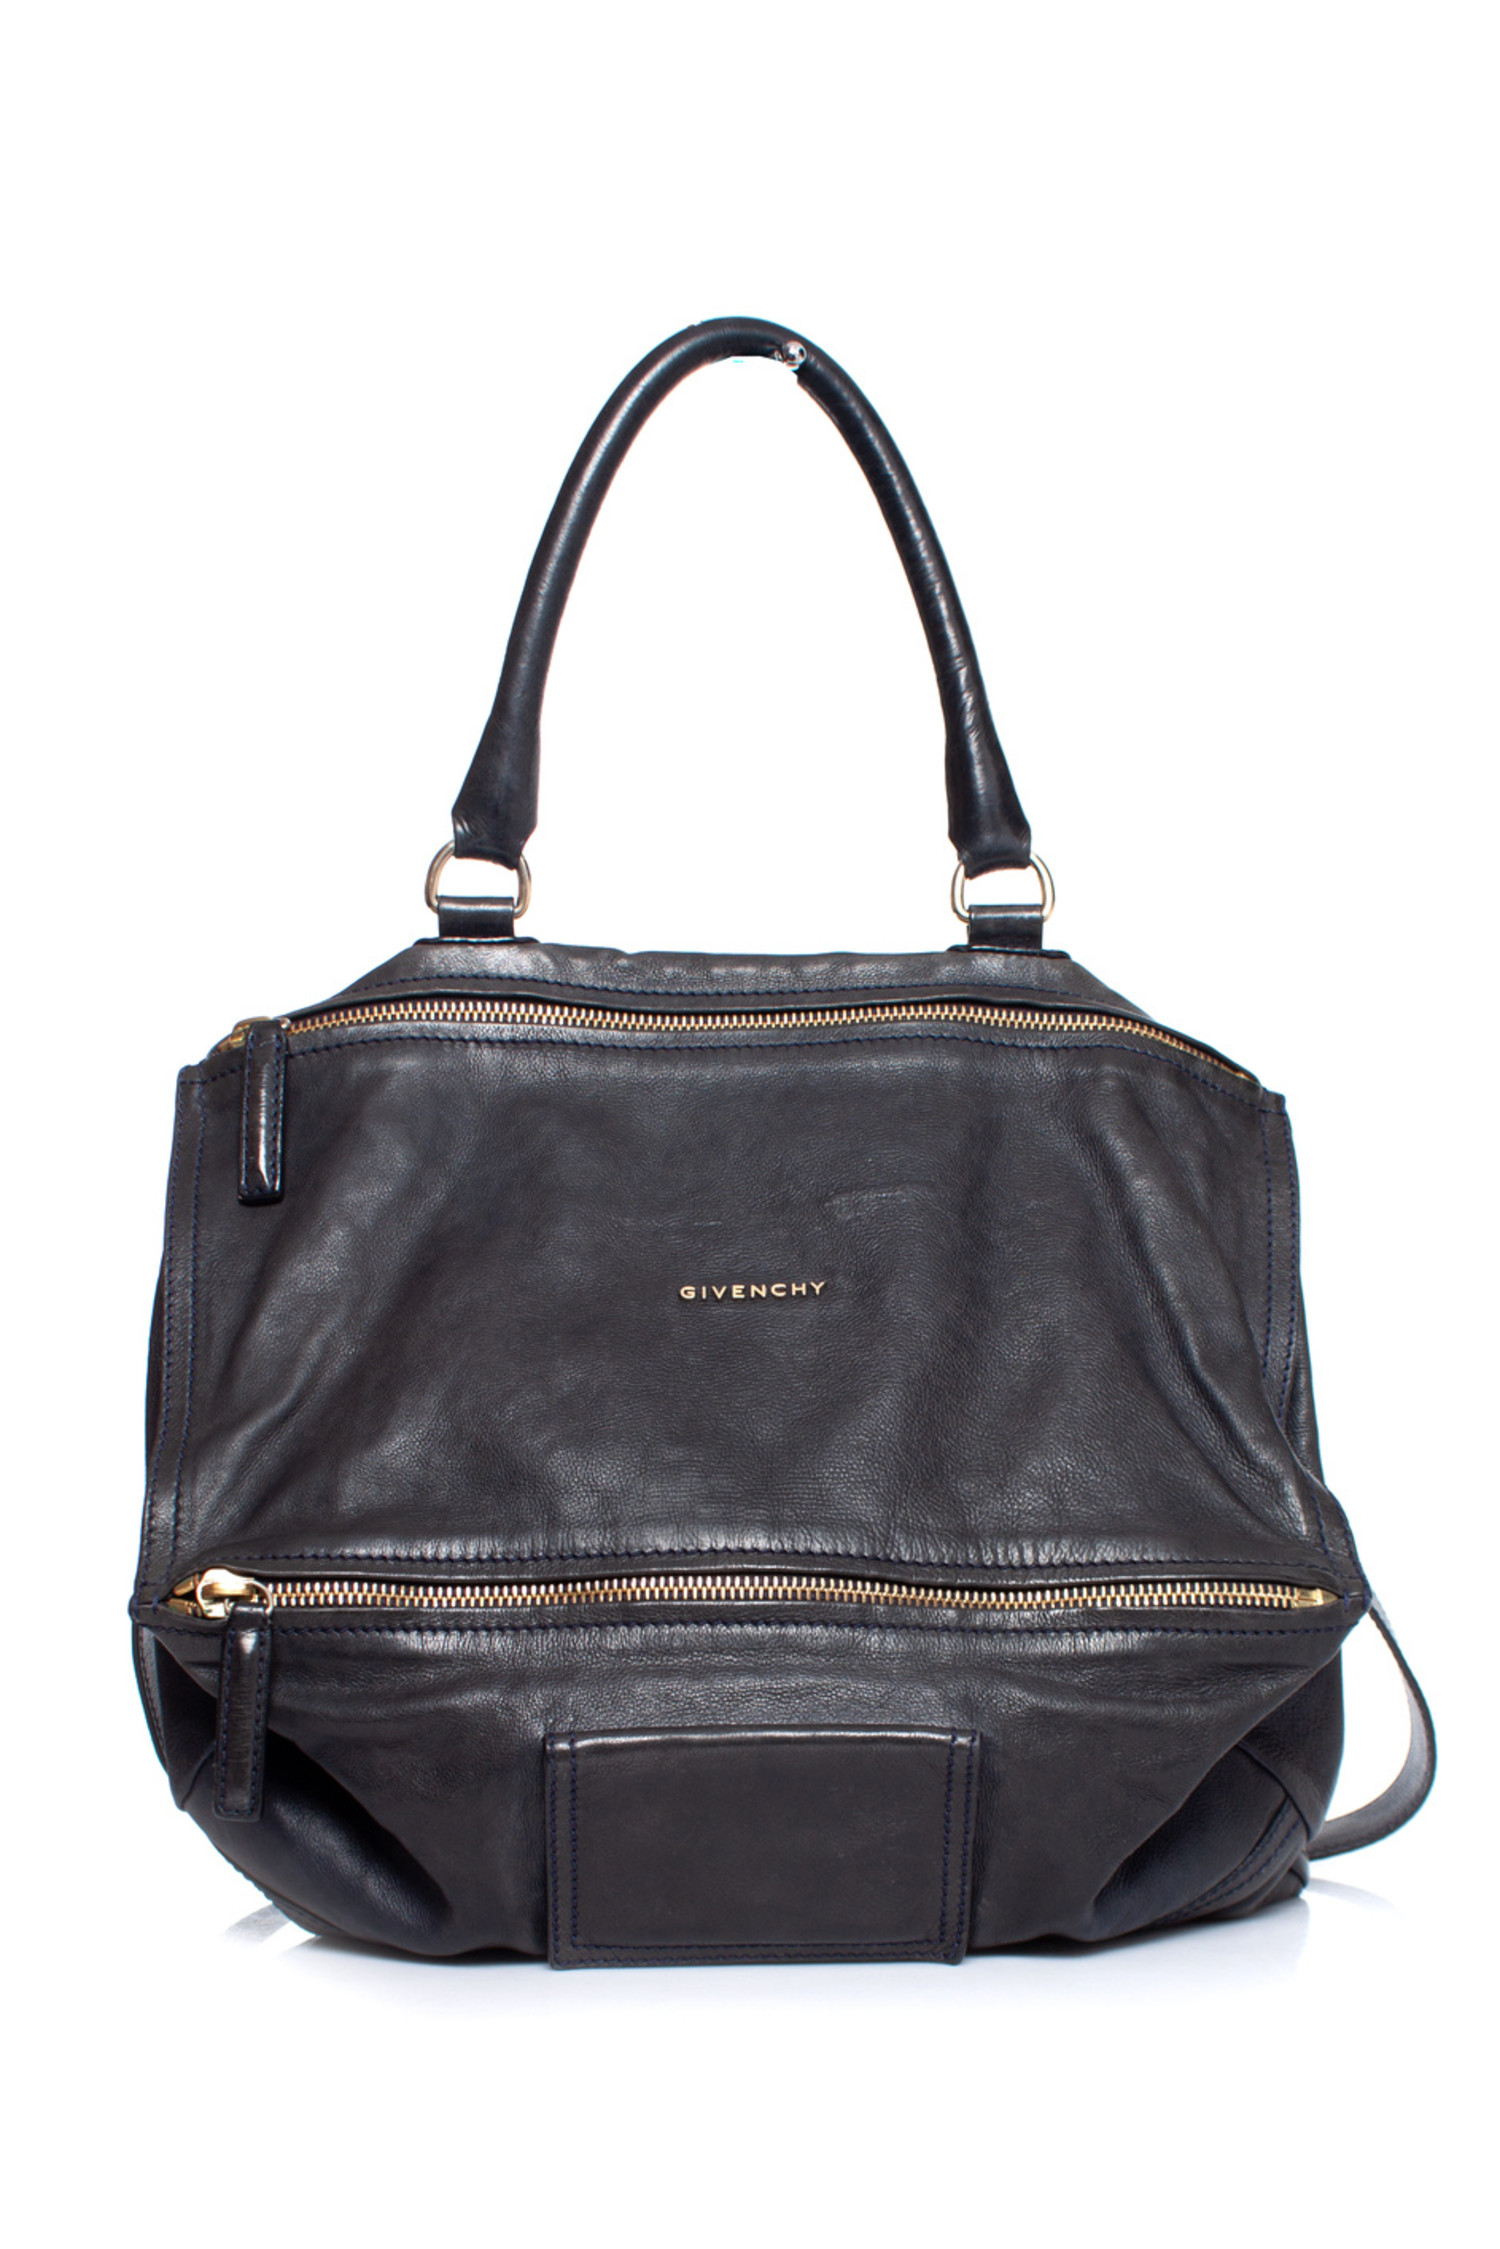 Givenchy, Large Pandora shoulder bag - Unique Designer Pieces